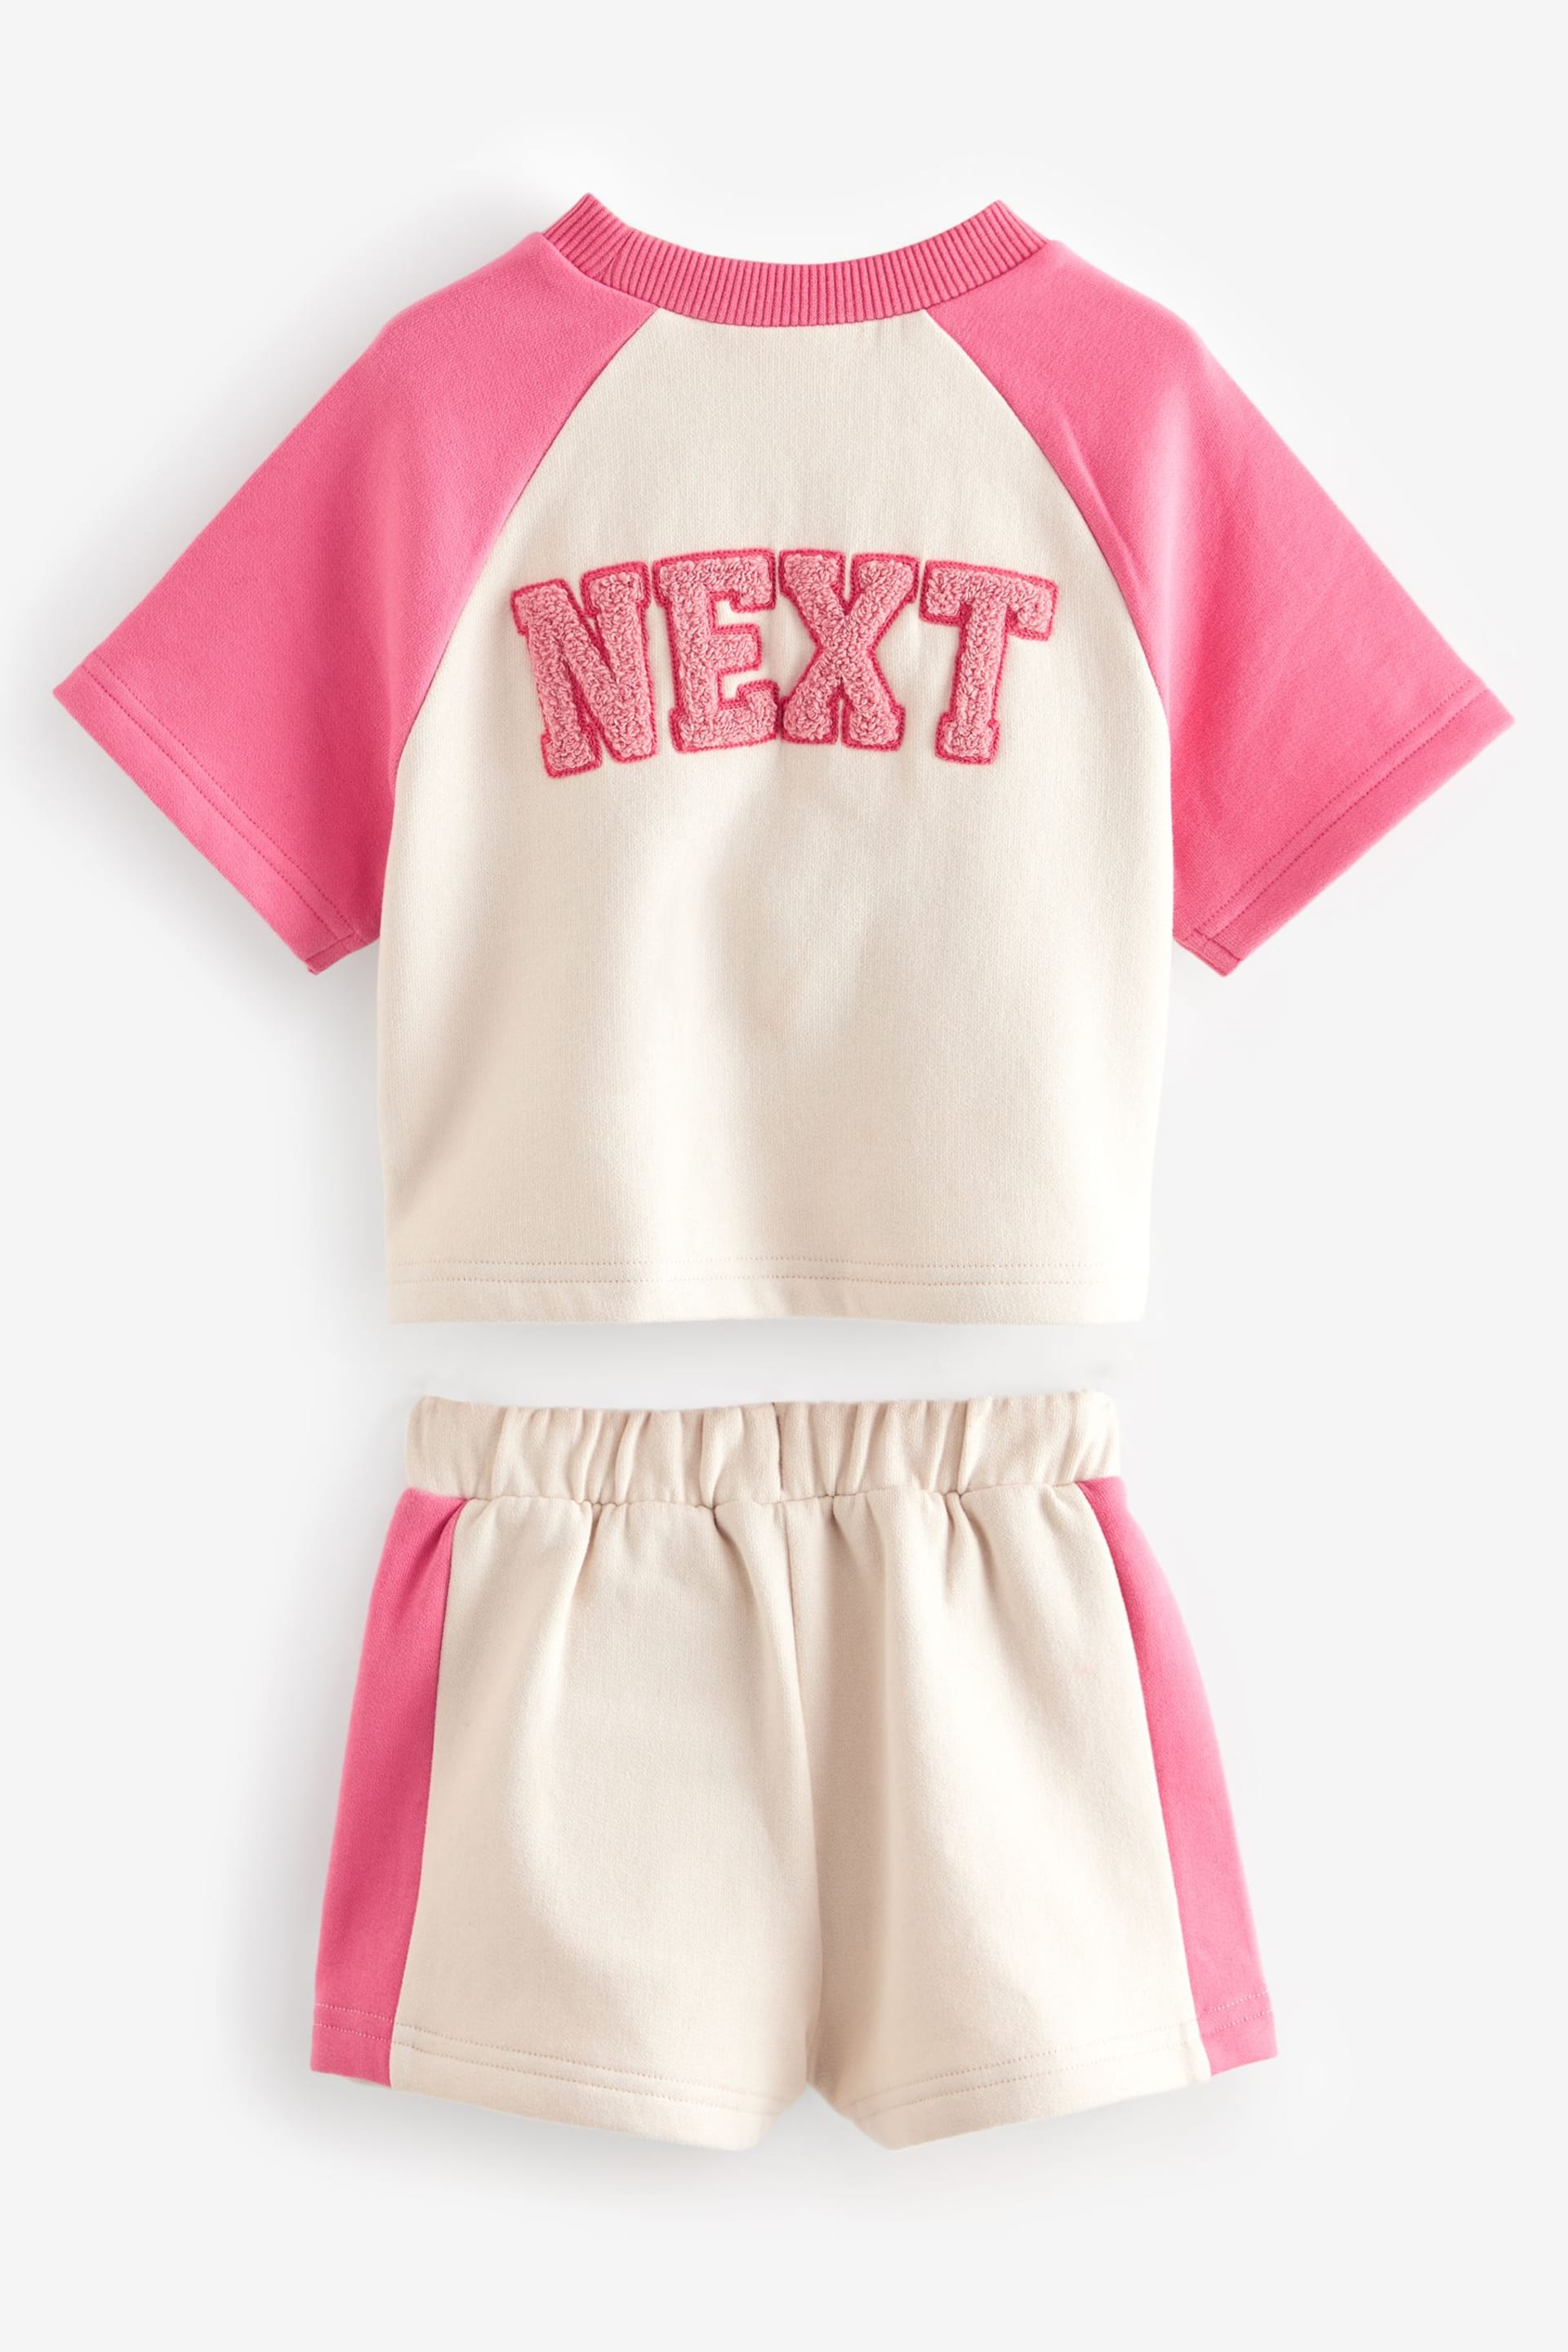 Pink T-Shirt And Shorts Set (3mths-7yrs) - Image 2 of 4